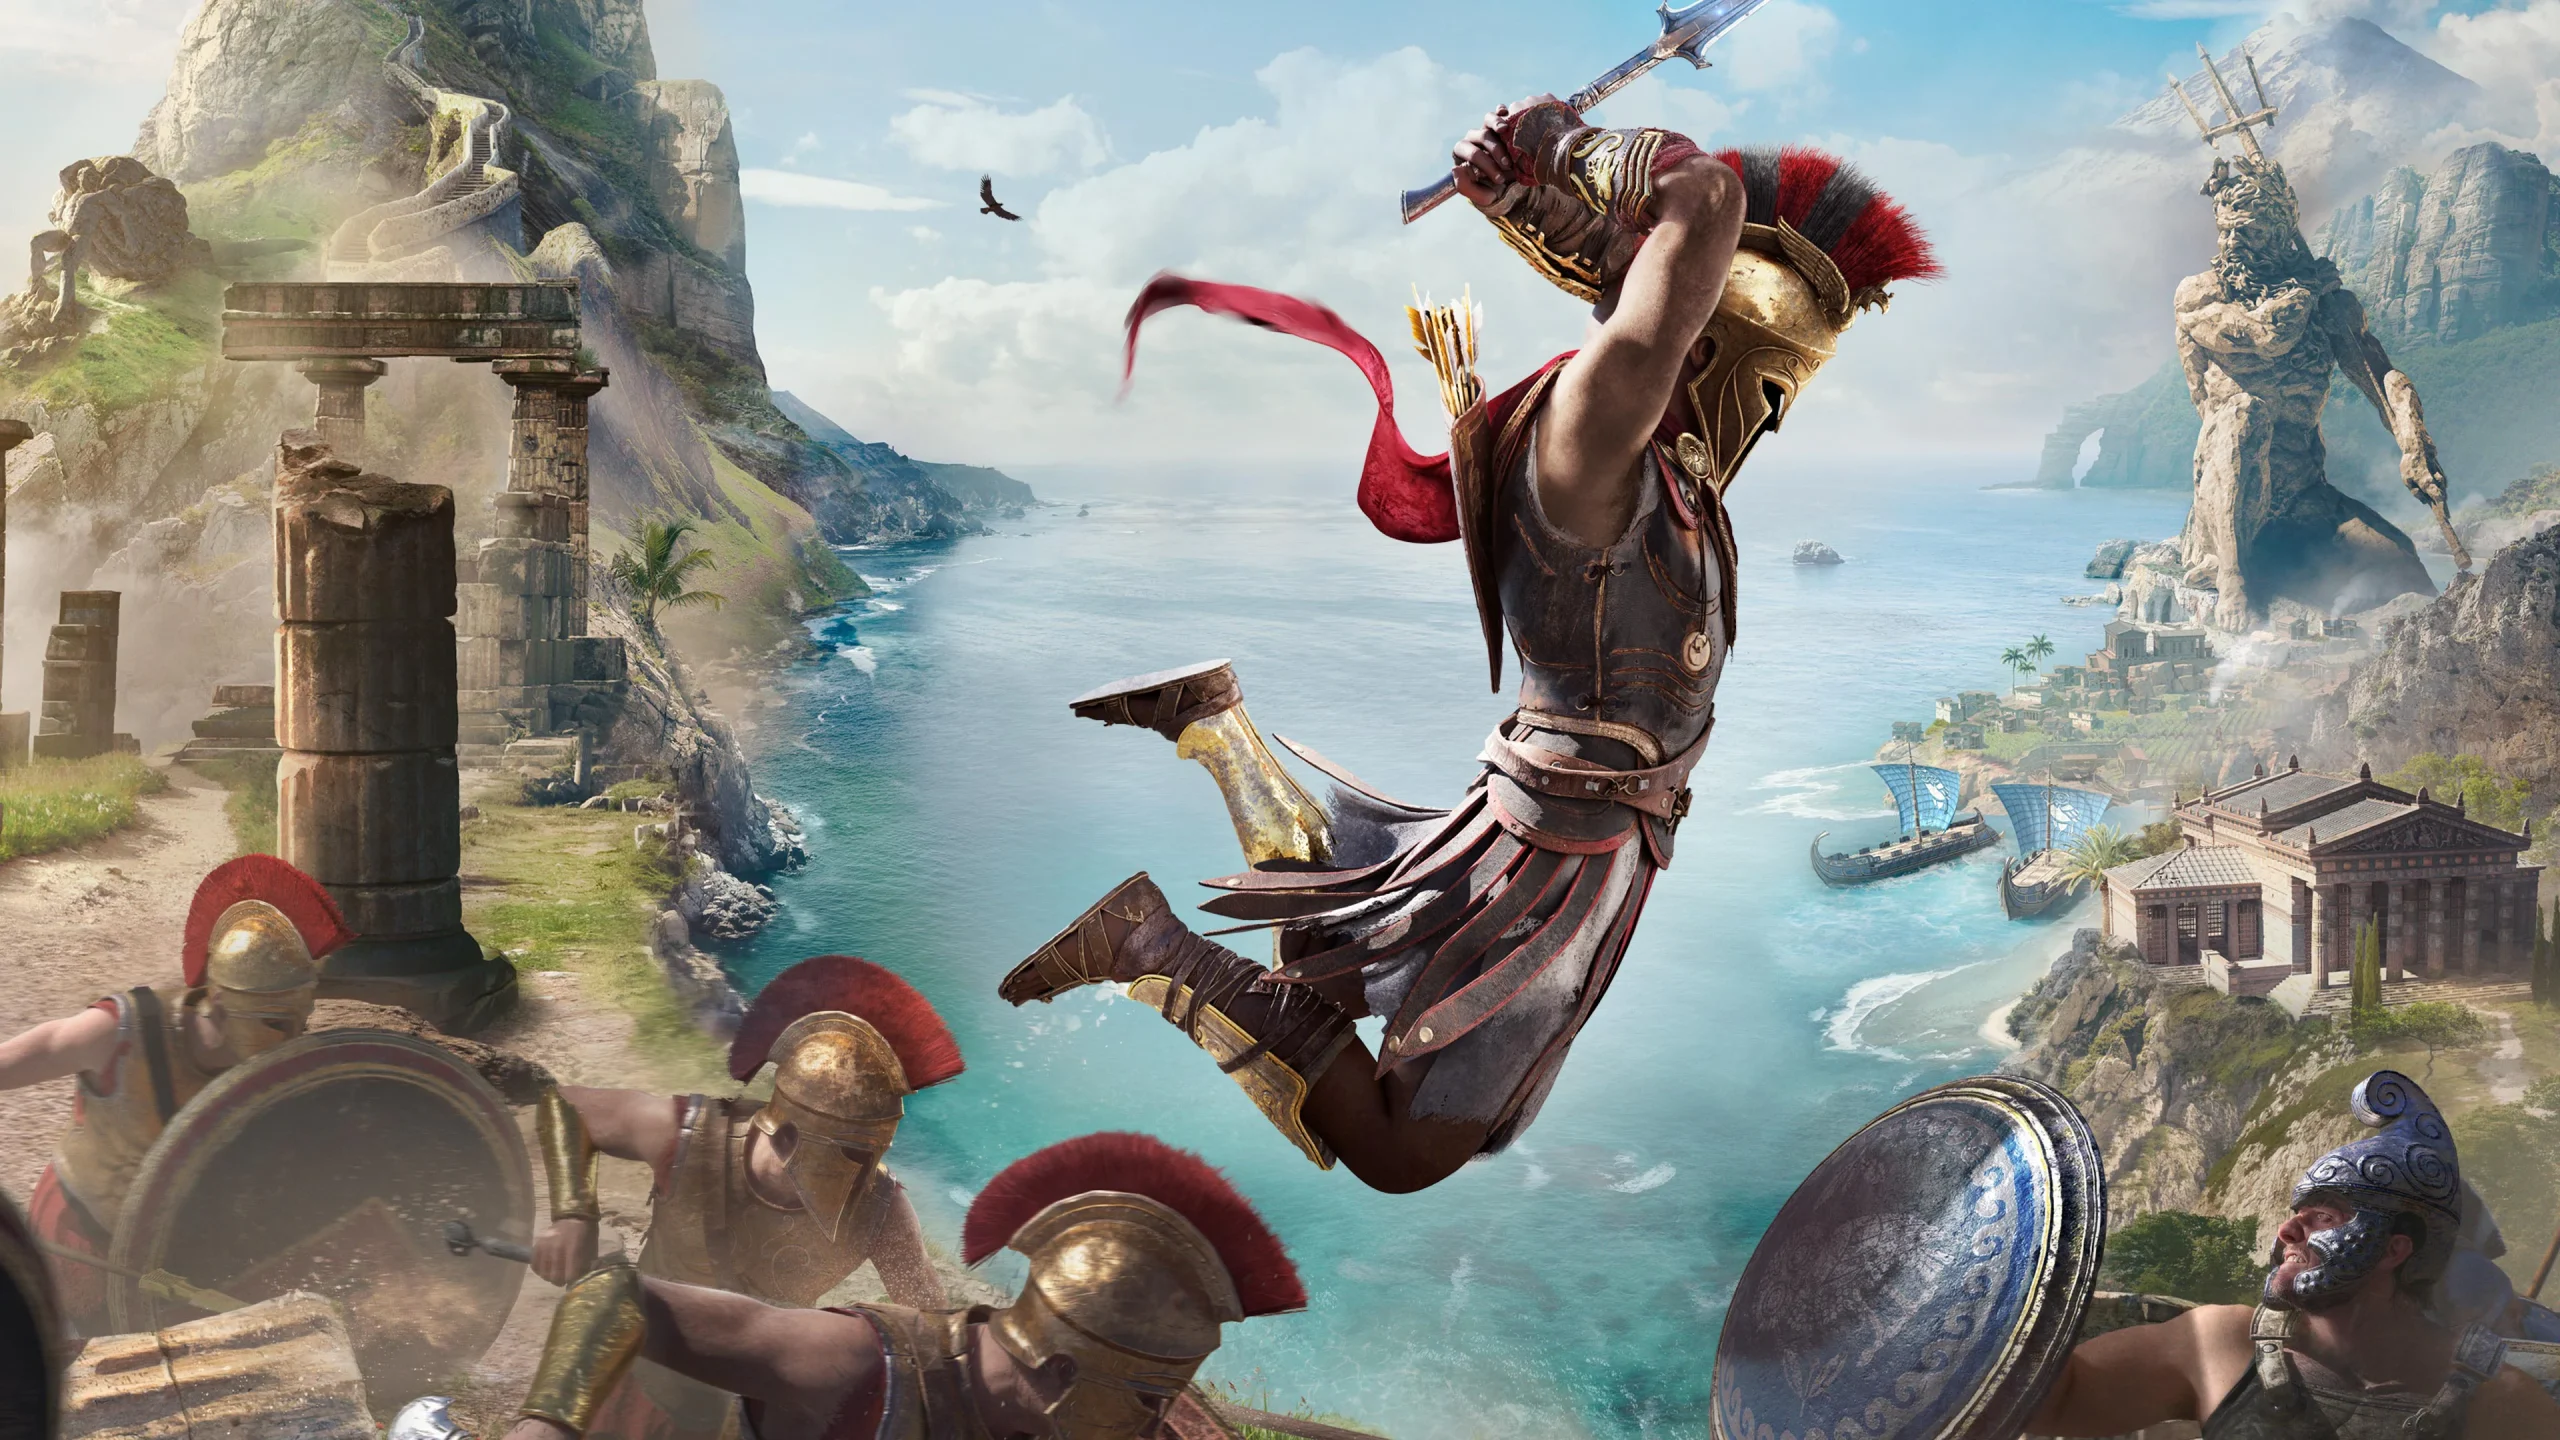 بازی Assassin’s Creed: Odyssey